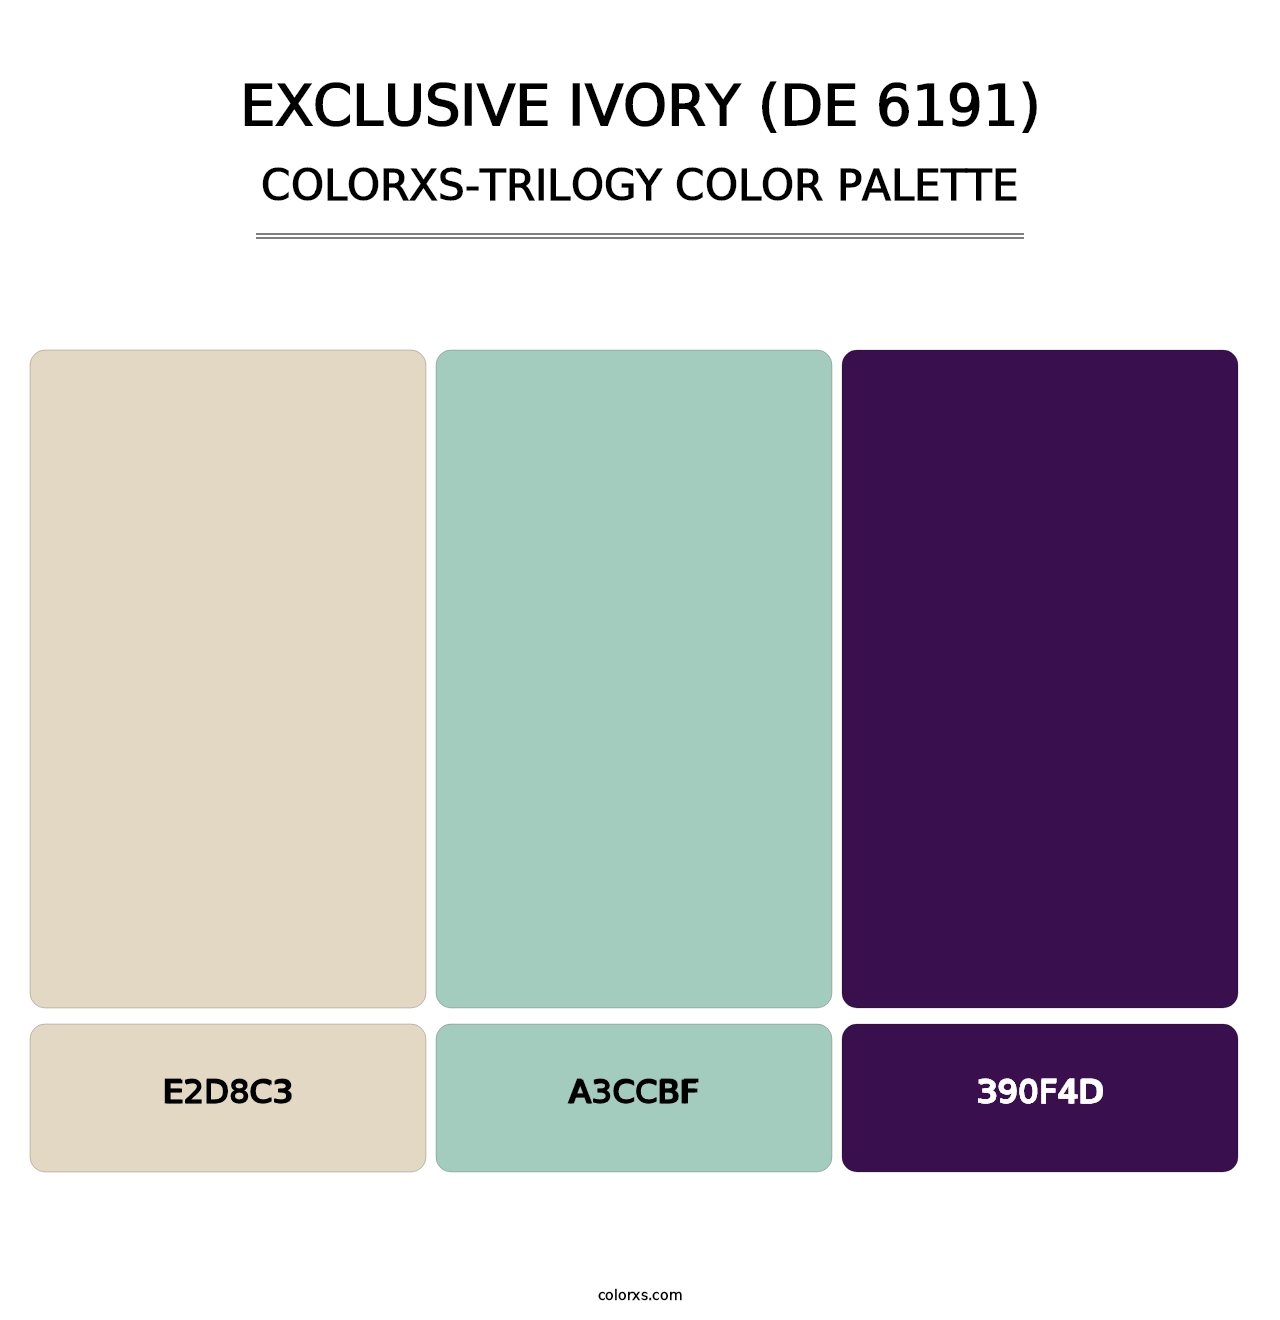 Exclusive Ivory (DE 6191) - Colorxs Trilogy Palette